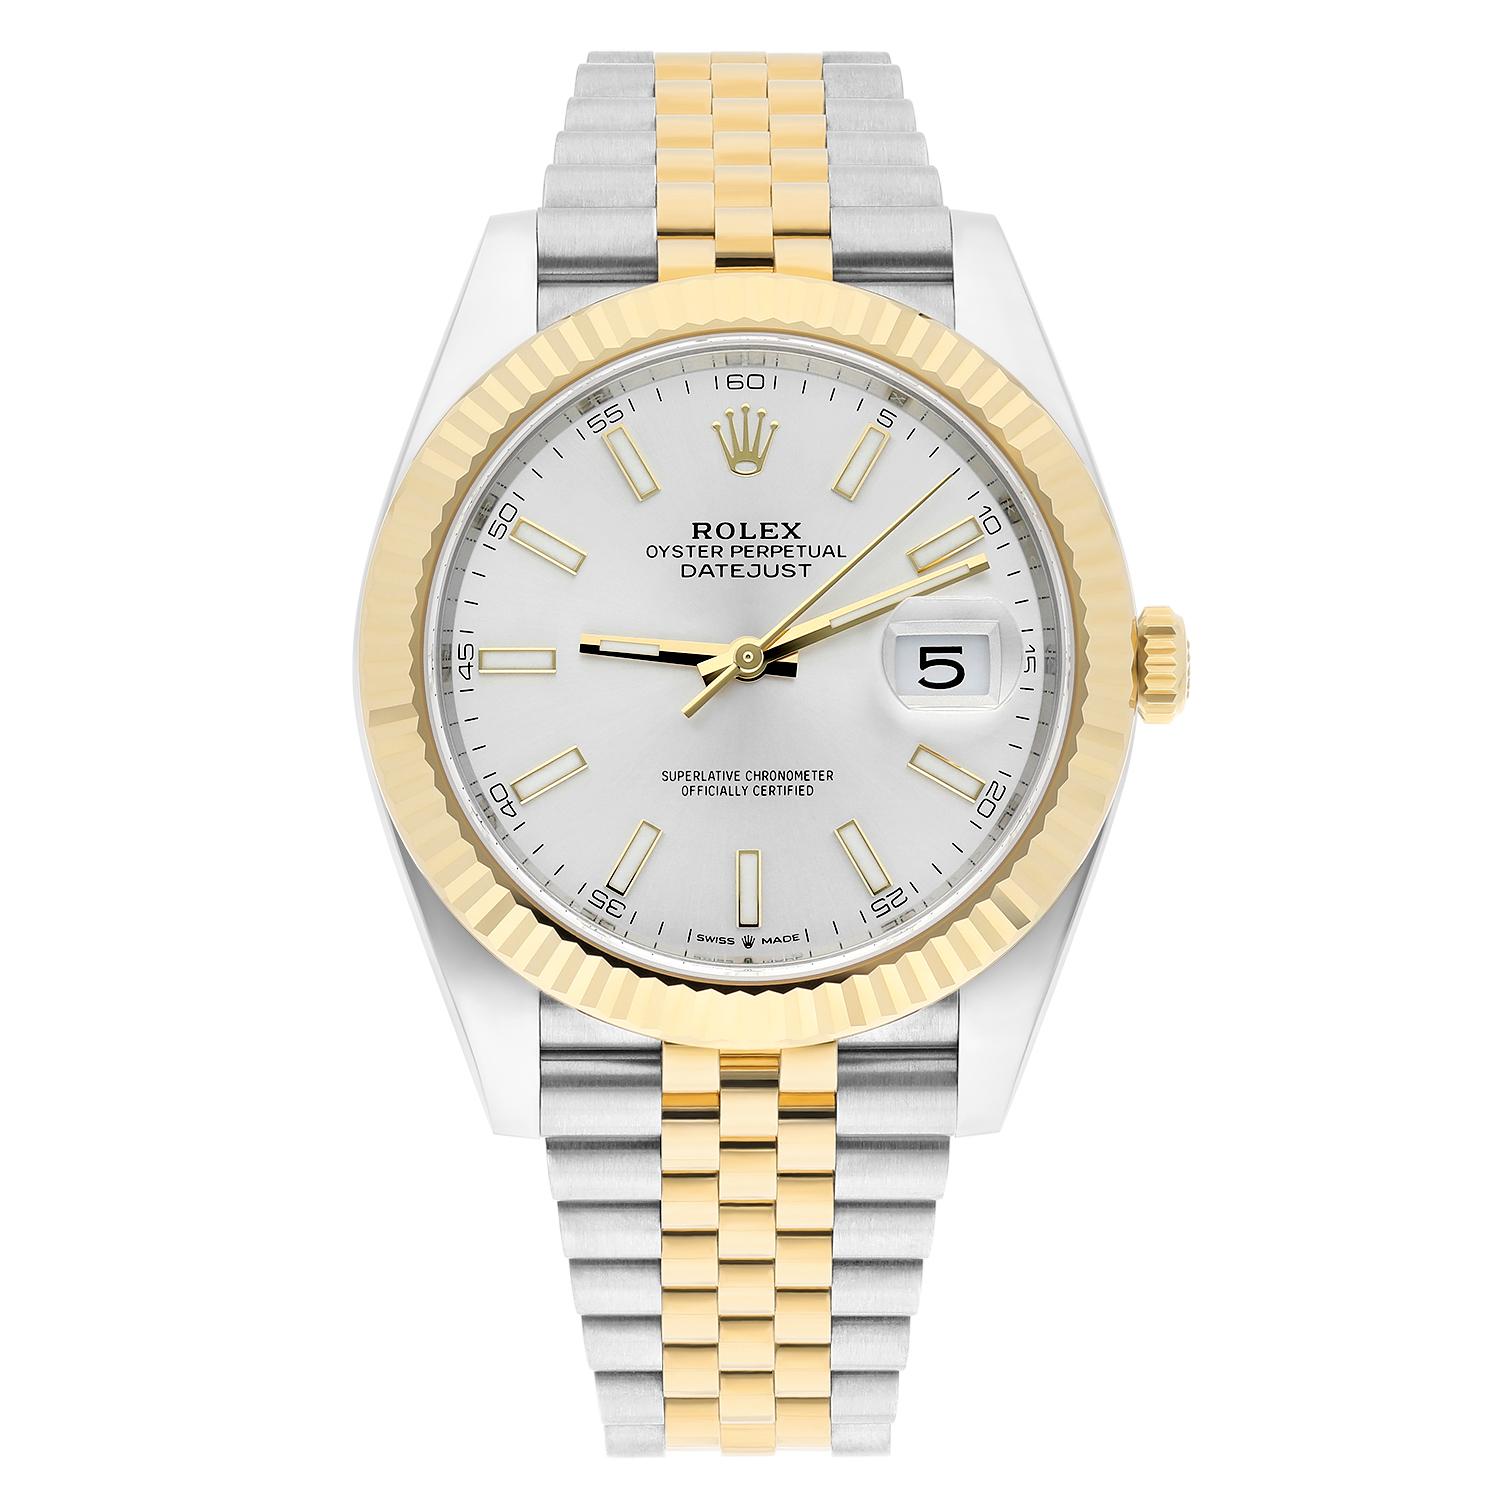 Cette montre-bracelet Rolex Datejust est un garde-temps luxueux et sportif qui respire l'élégance et le style. Fabriquée en acier inoxydable et en or jaune 18 carats de haute qualité, cette montre présente un boîtier de 41 mm, une lunette cannelée,